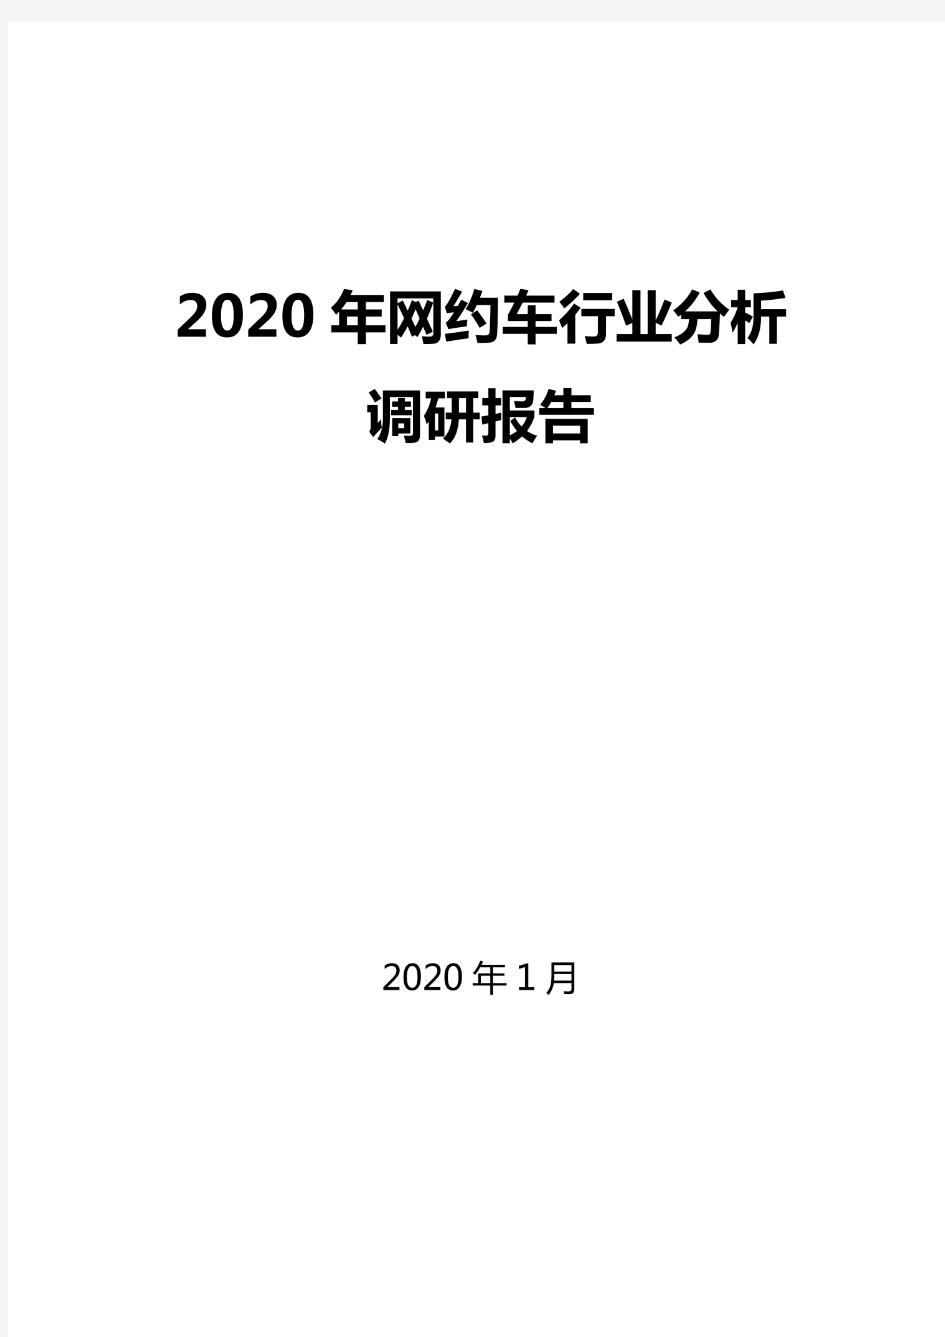 2020网约车行业分析报告